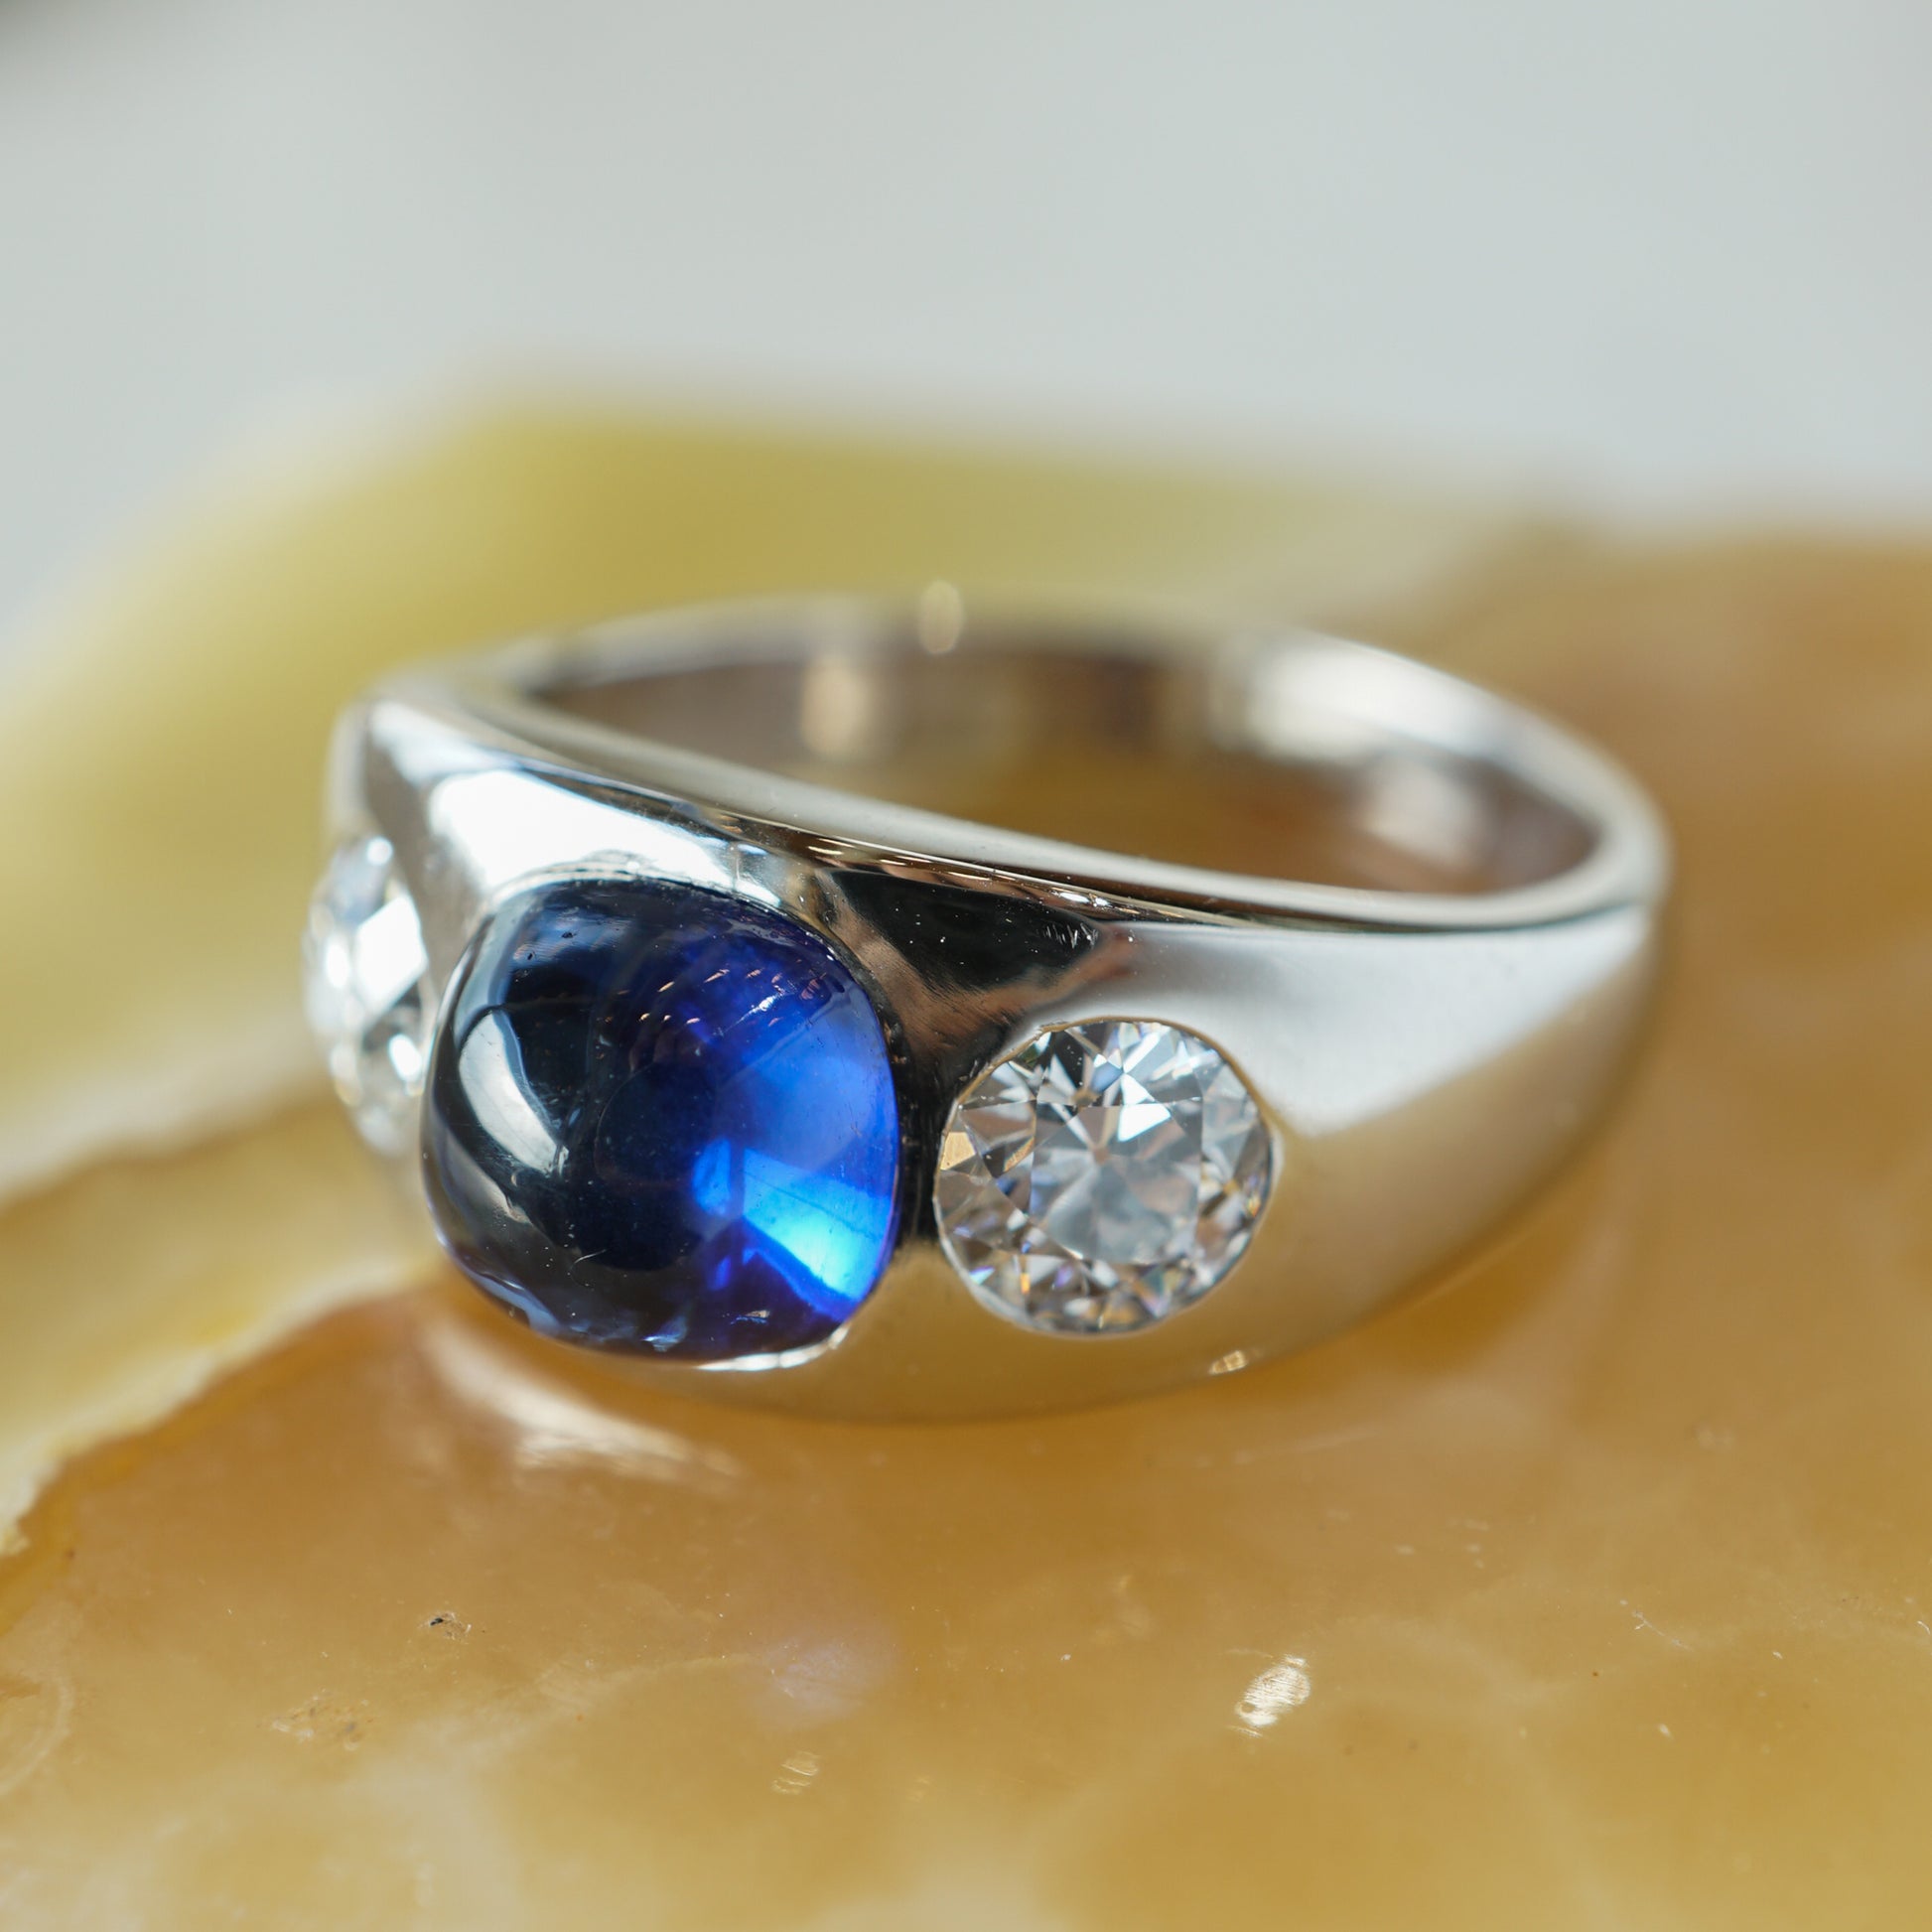 Men's Art Deco Sapphire & Diamond Ring in Platinum